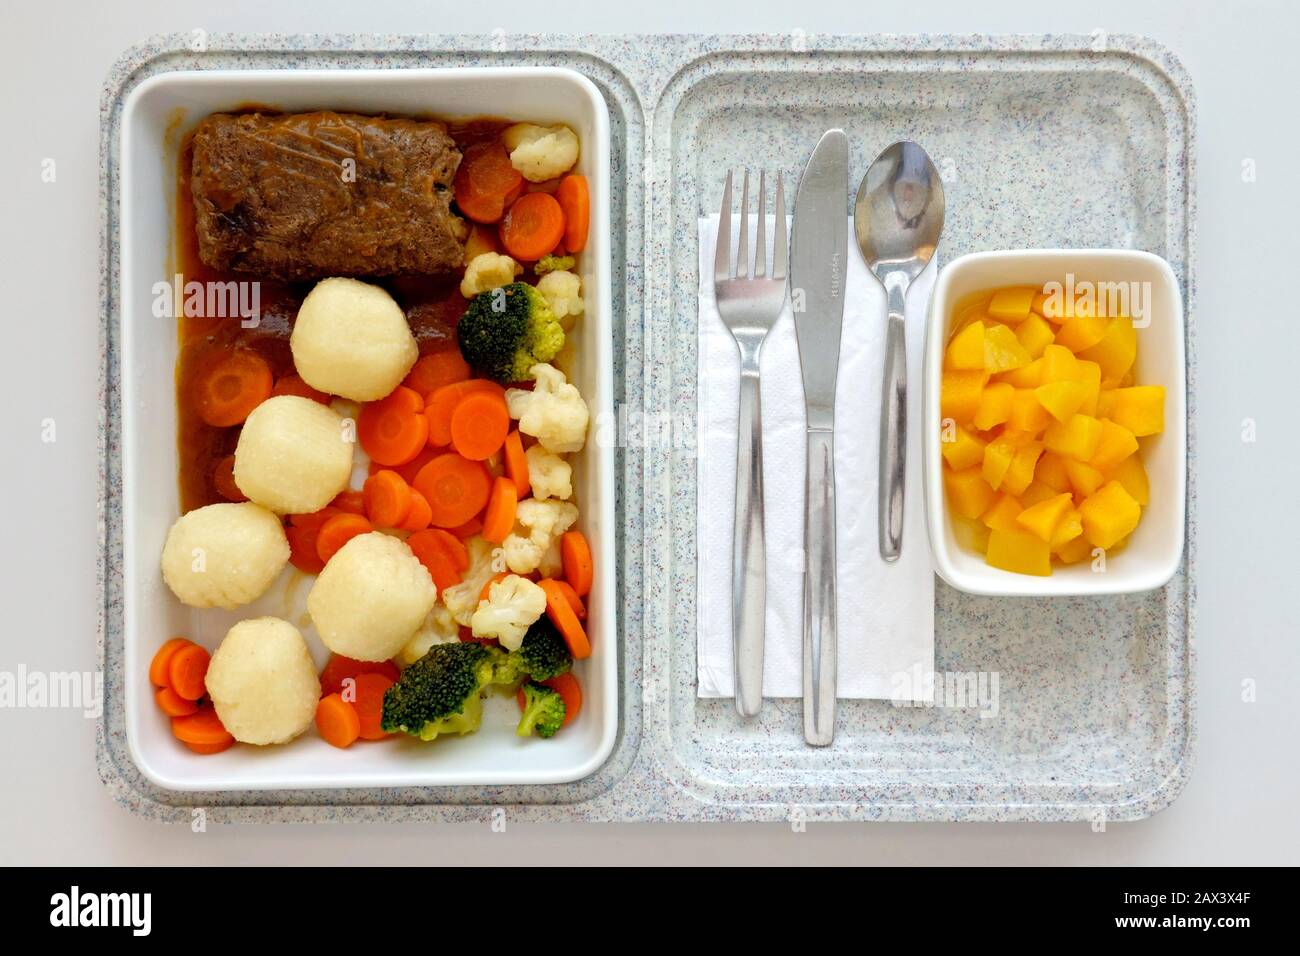 Repas prêt, déjeuner déficient à l'hôpital, roulette de bœuf, sauce, boulettes de pommes de terre, légumes colorés, compote d'abricot, Allemagne Banque D'Images